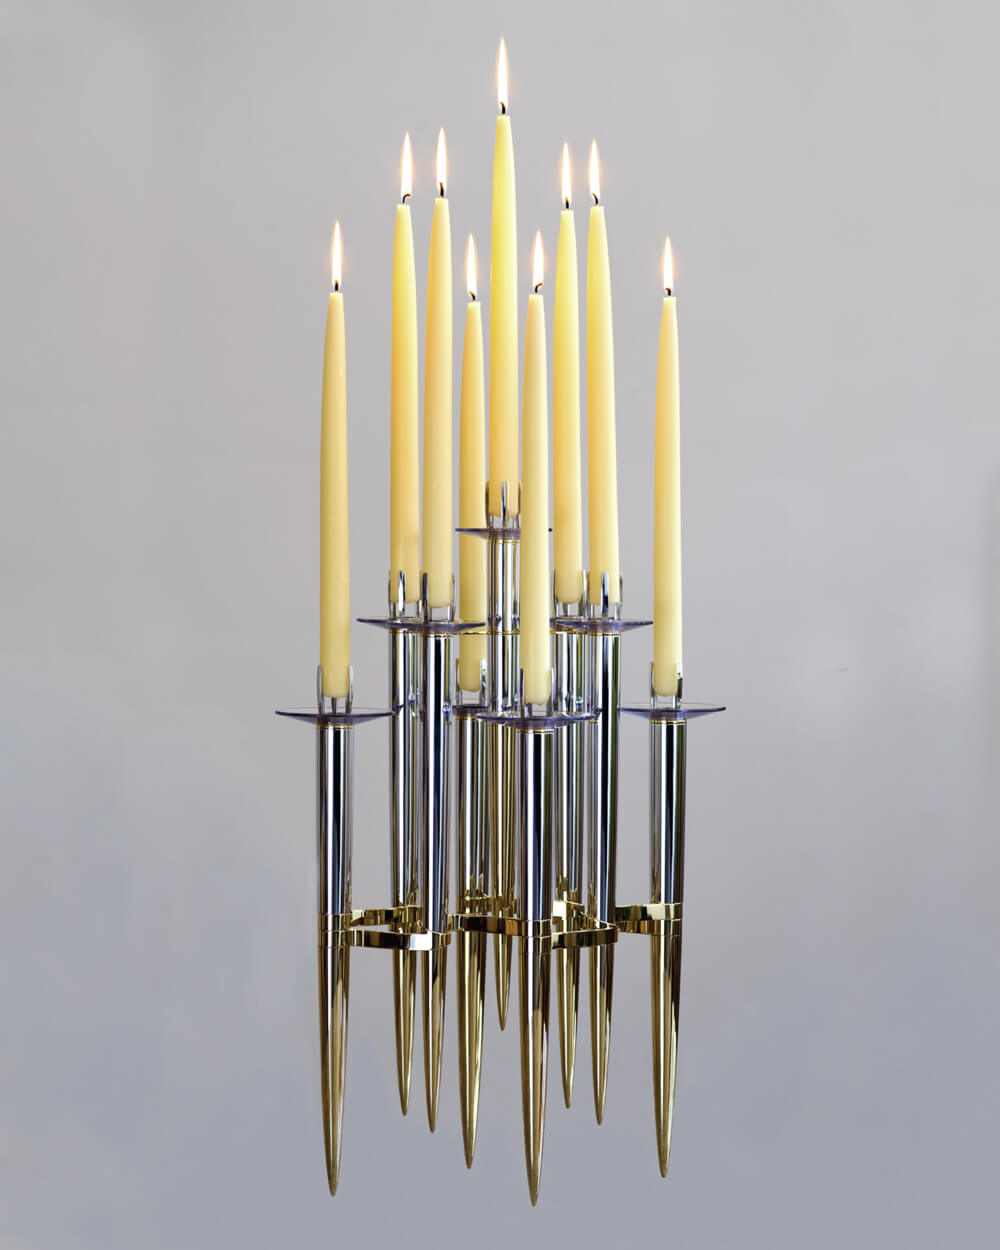 LBR9 holding nine lit candles